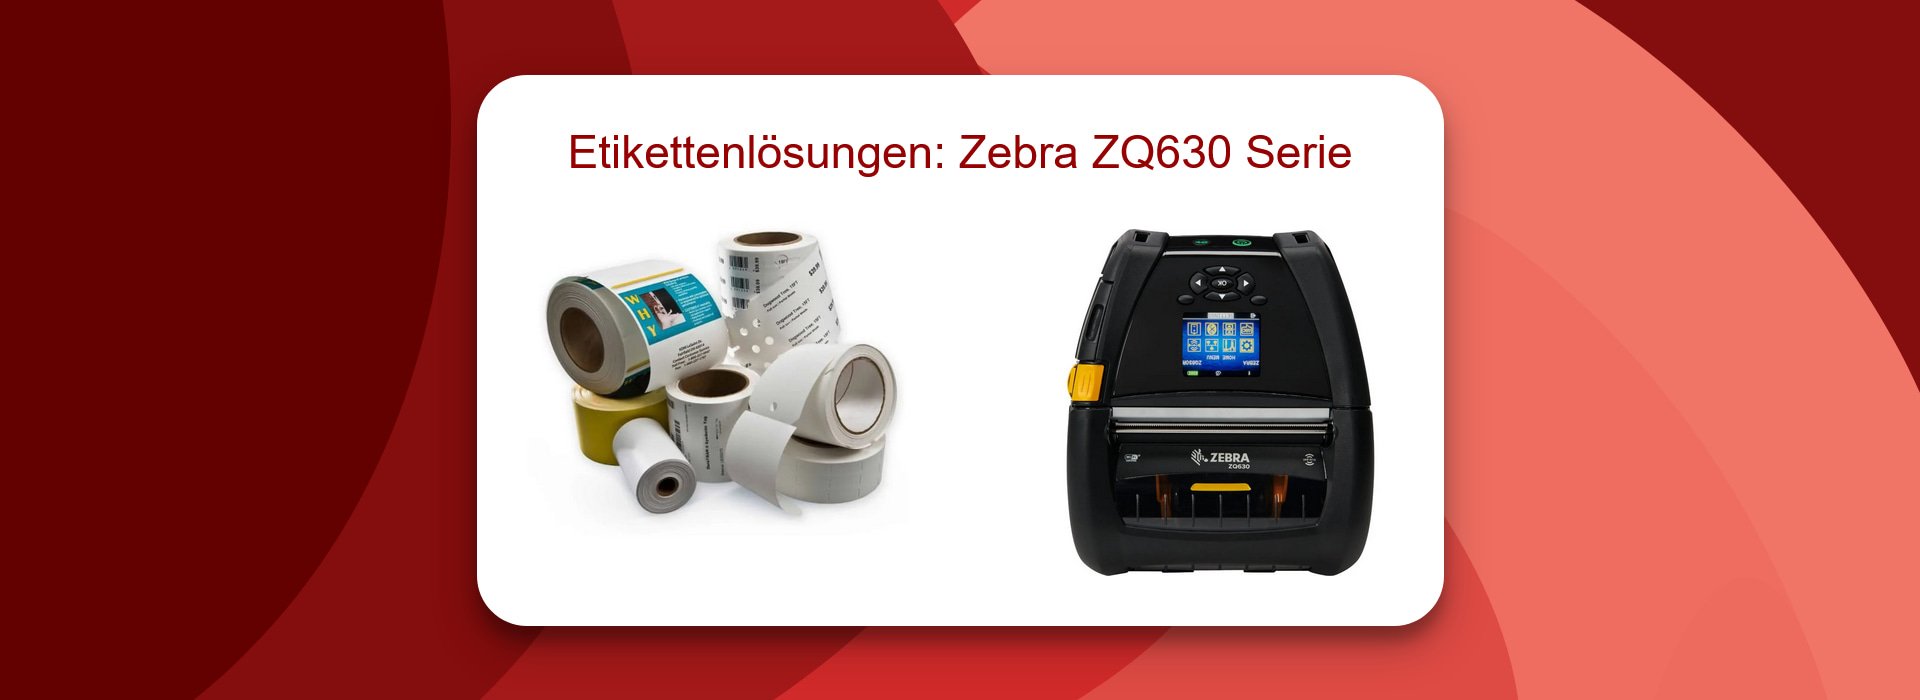 Top-Etikettenlösungen: Zebra ZQ630 Serie